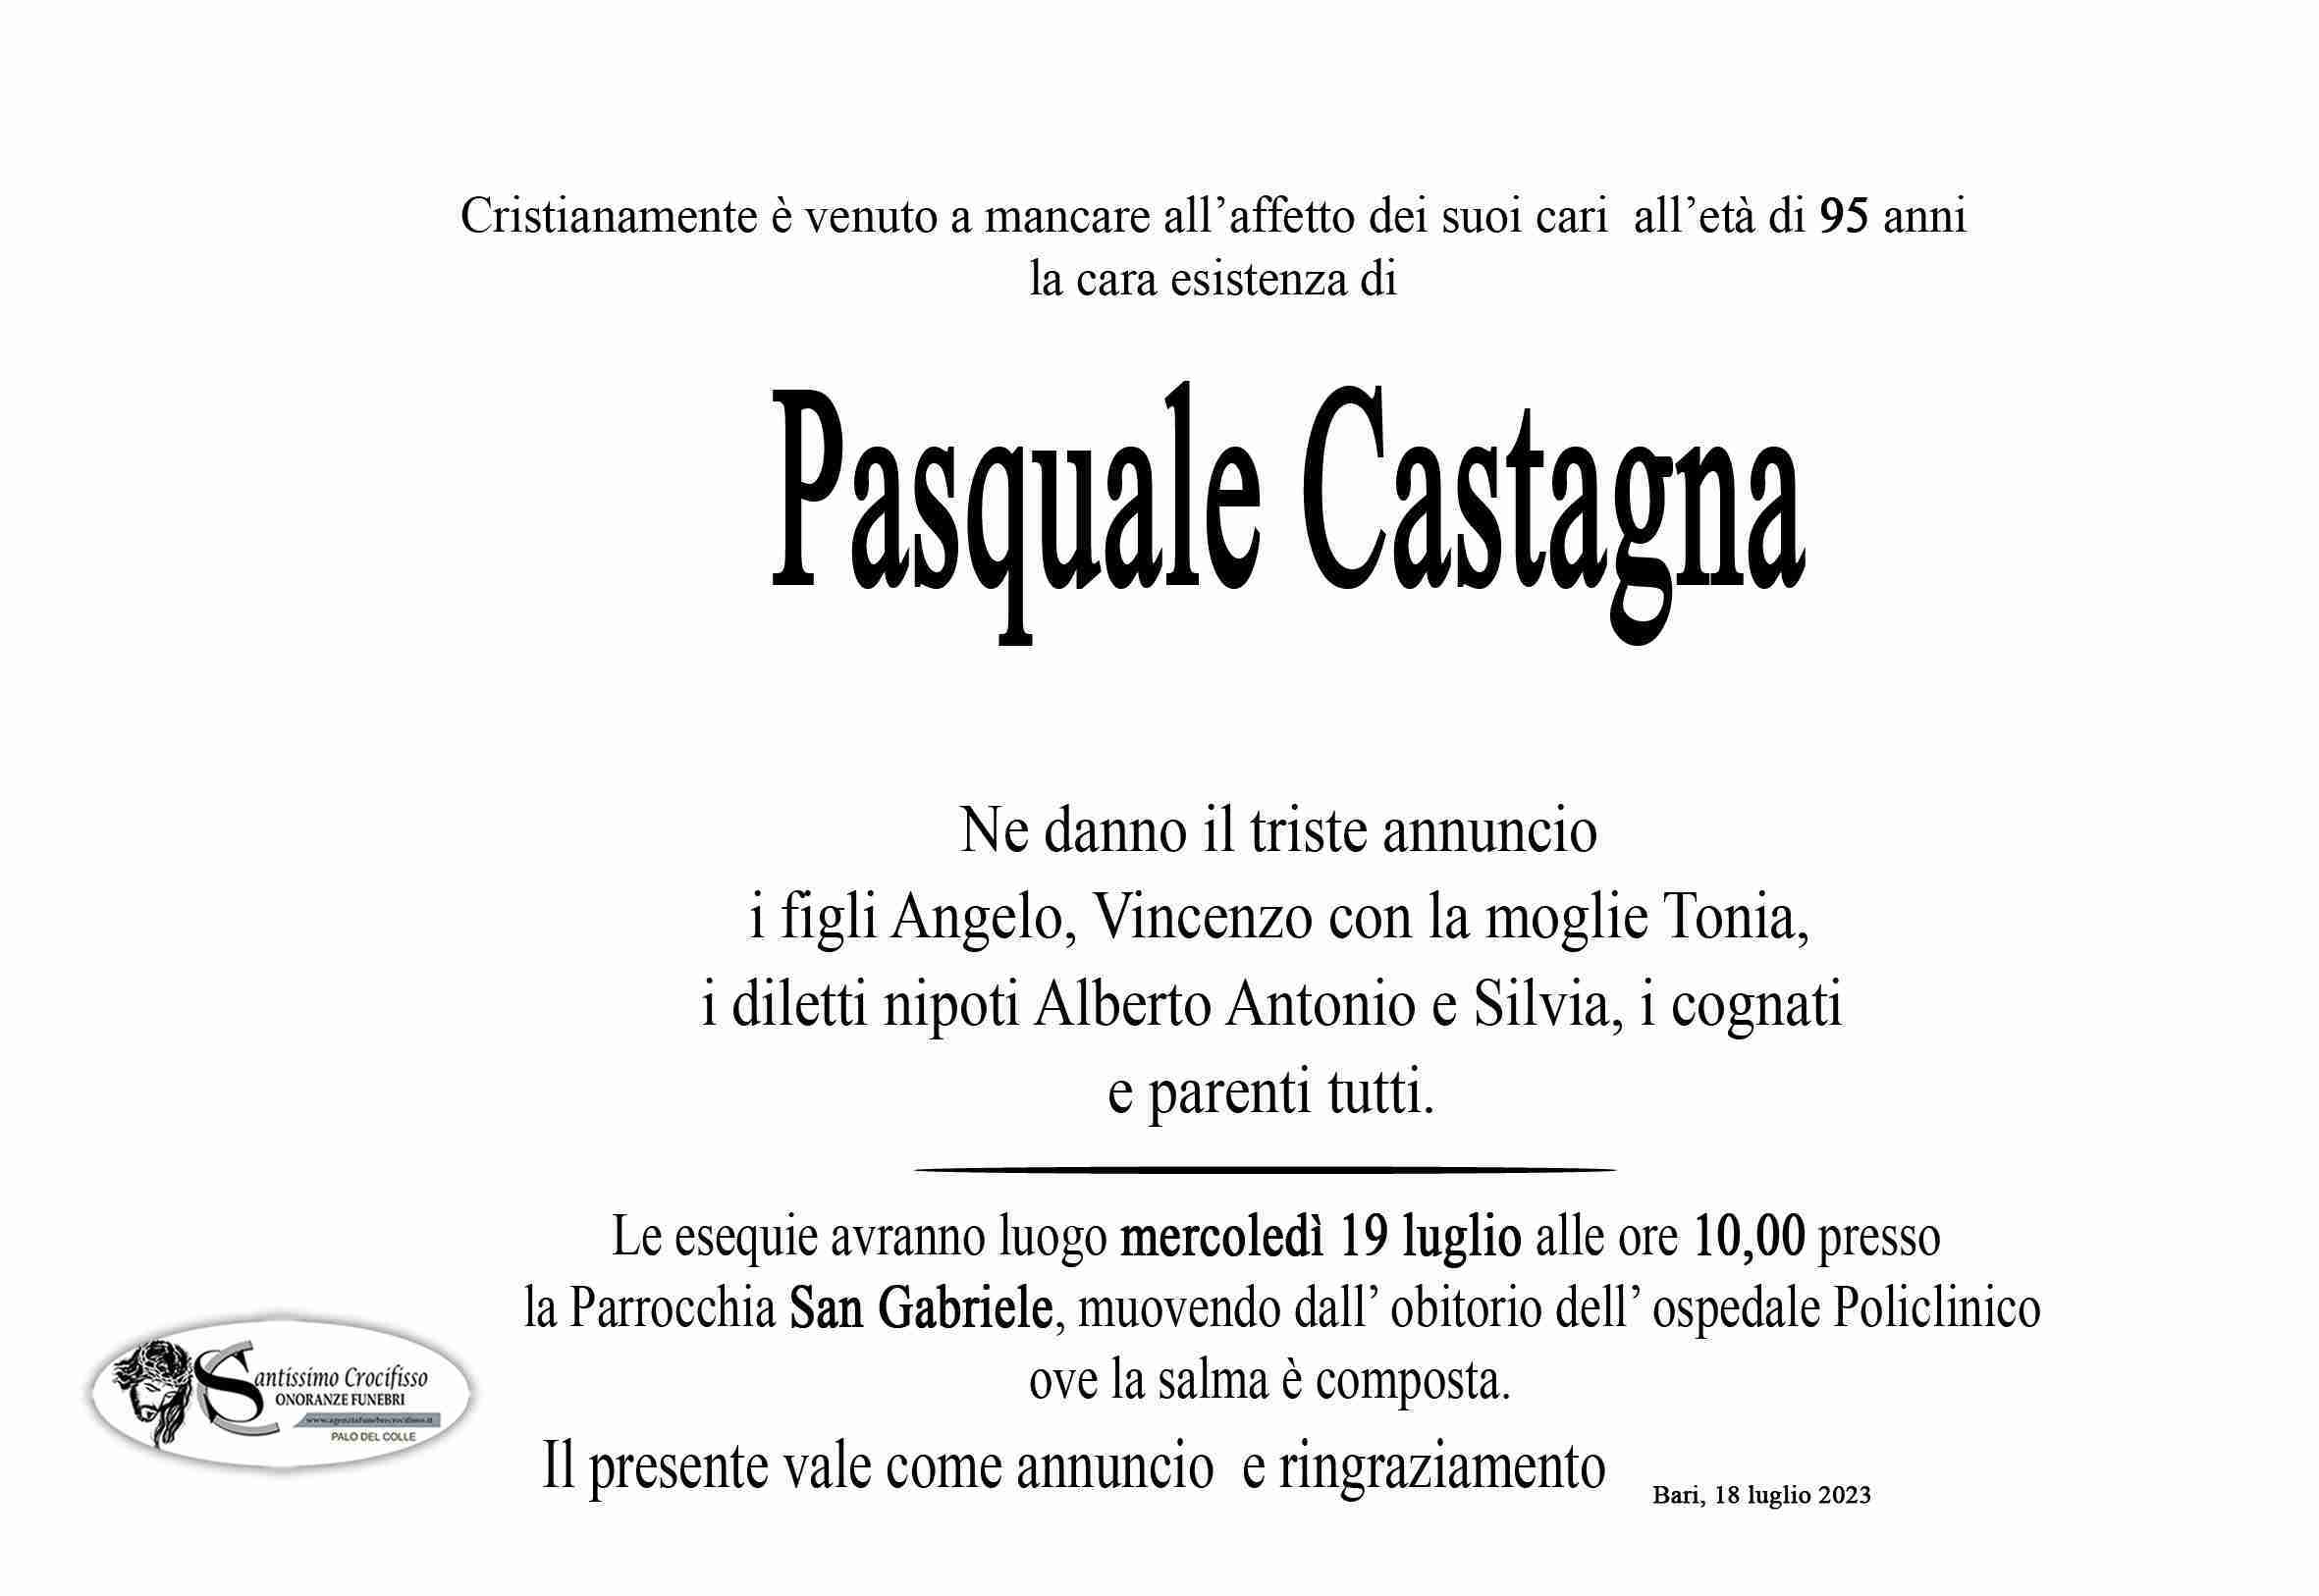 Pasquale Castagna